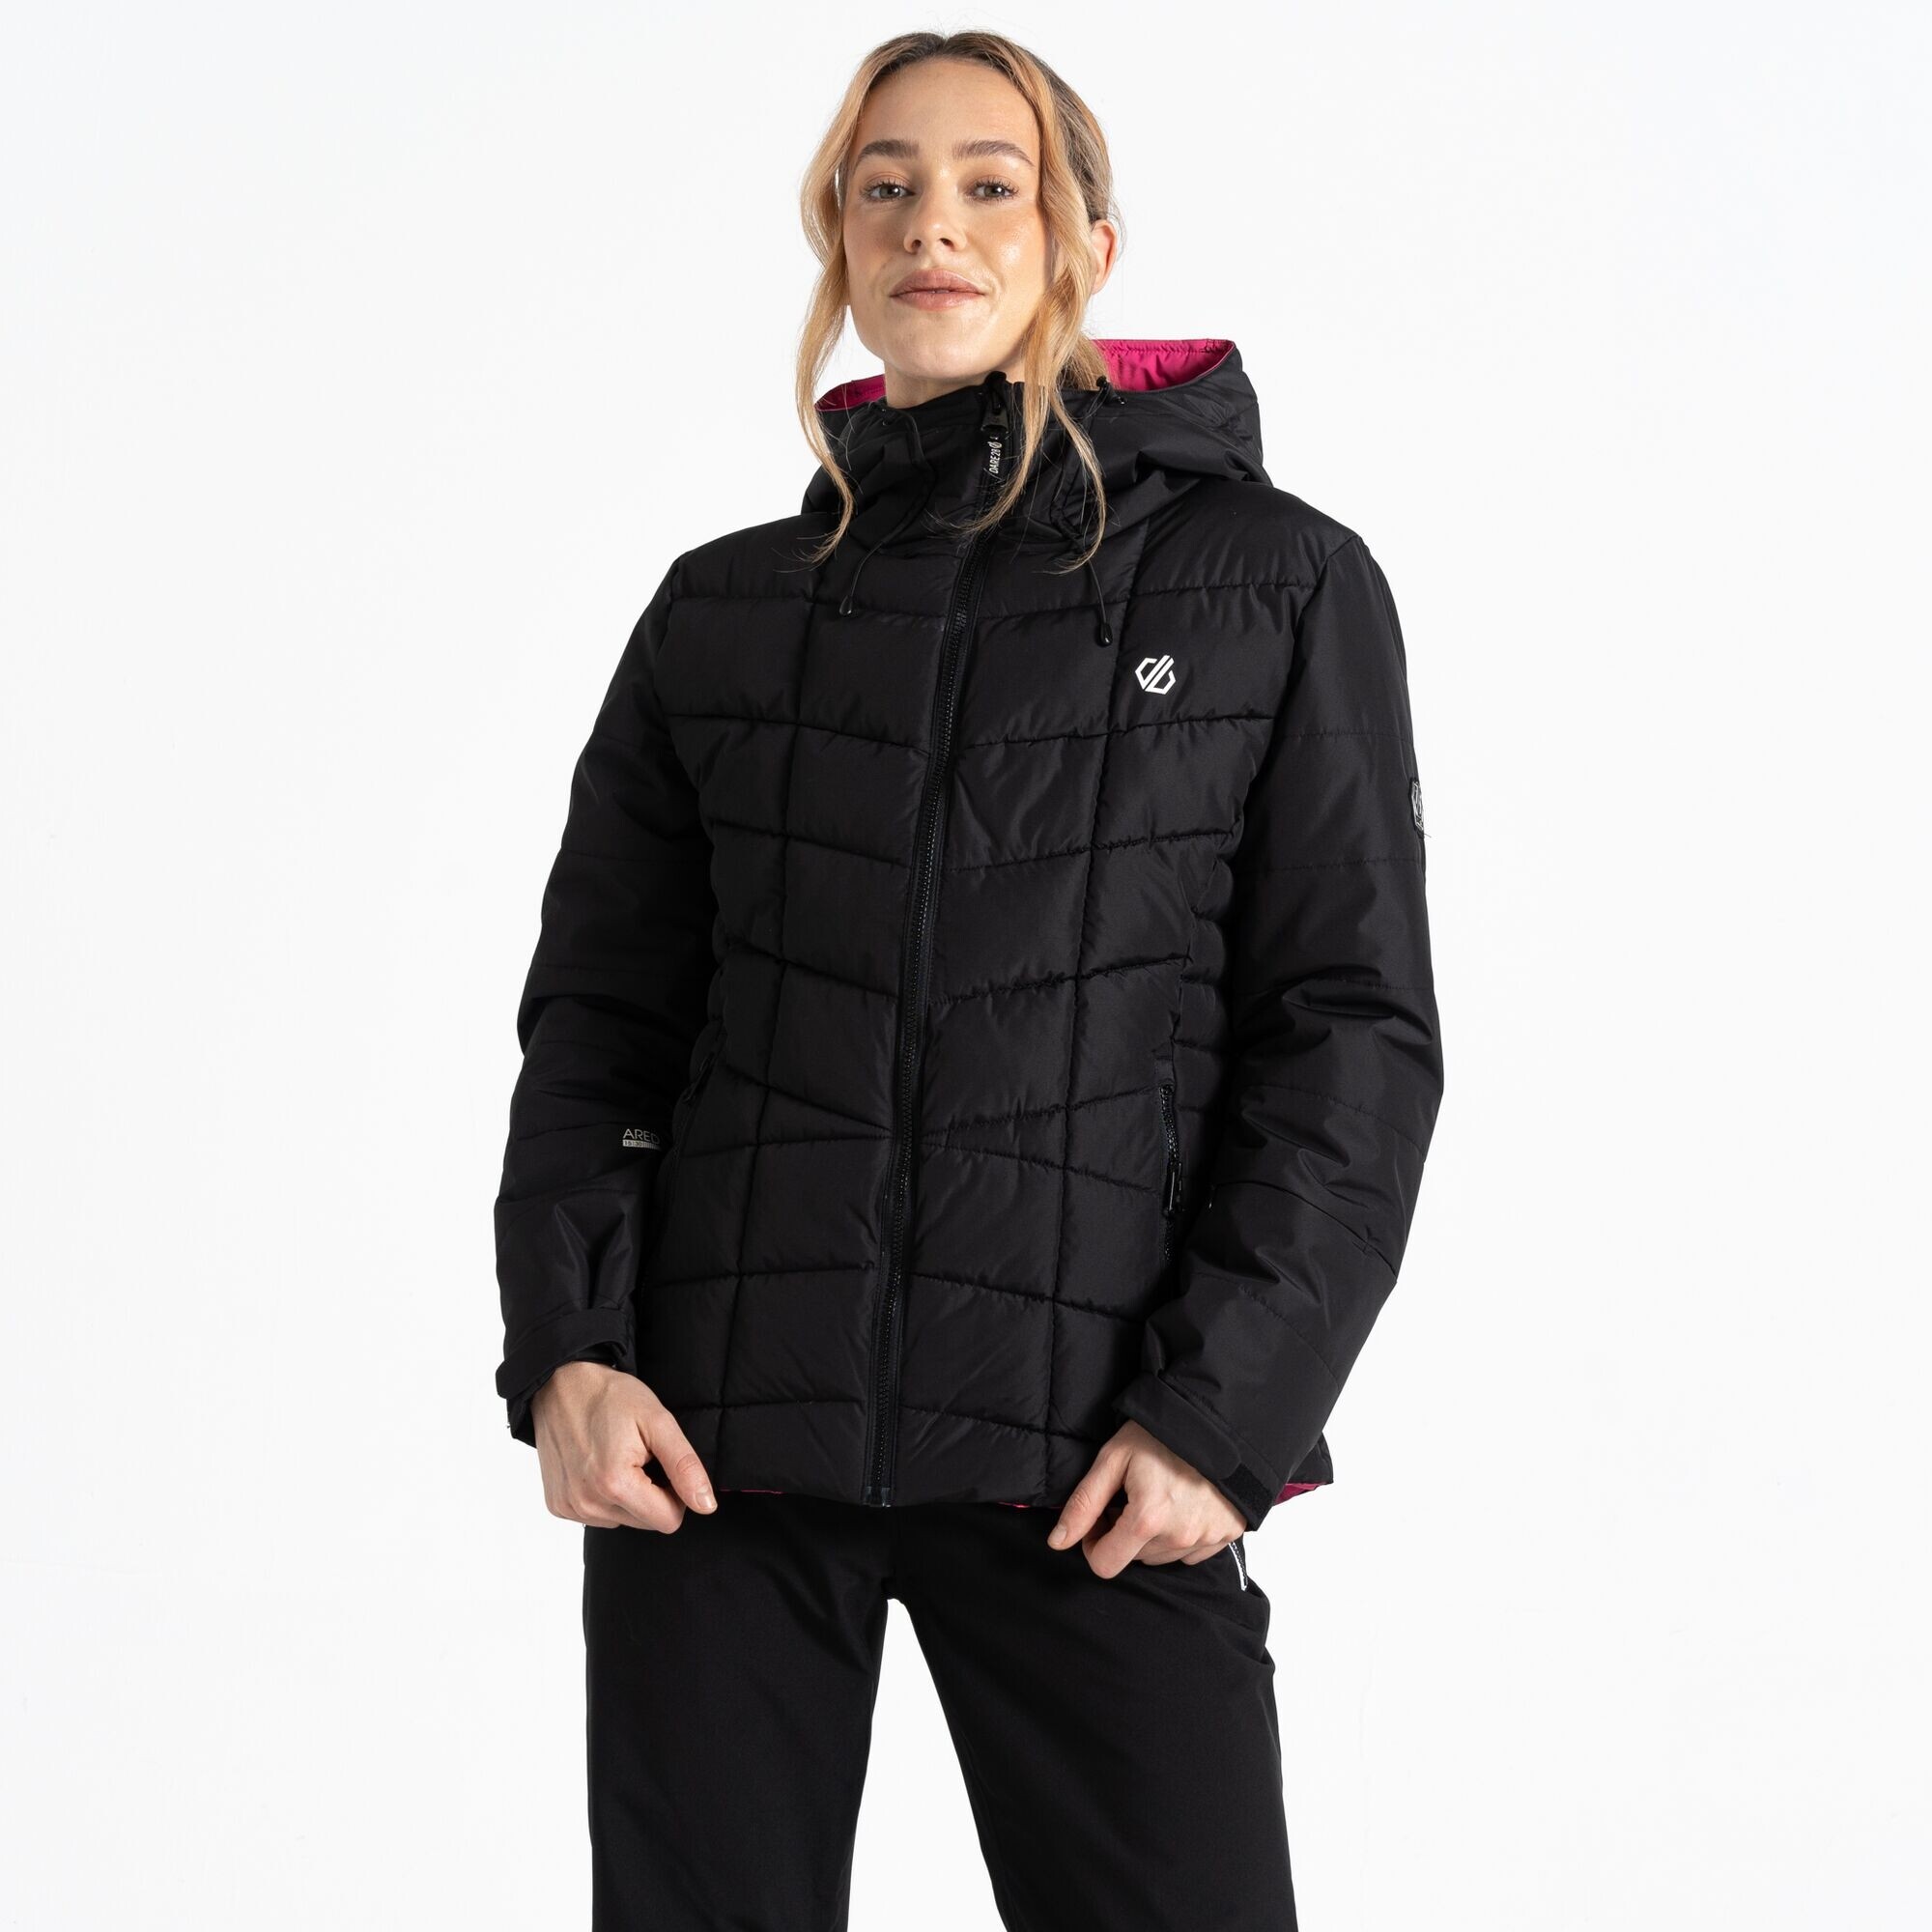 Dámská lyžařská bunda Blindside Jacket DWP569-800 černá - Dare2B 44